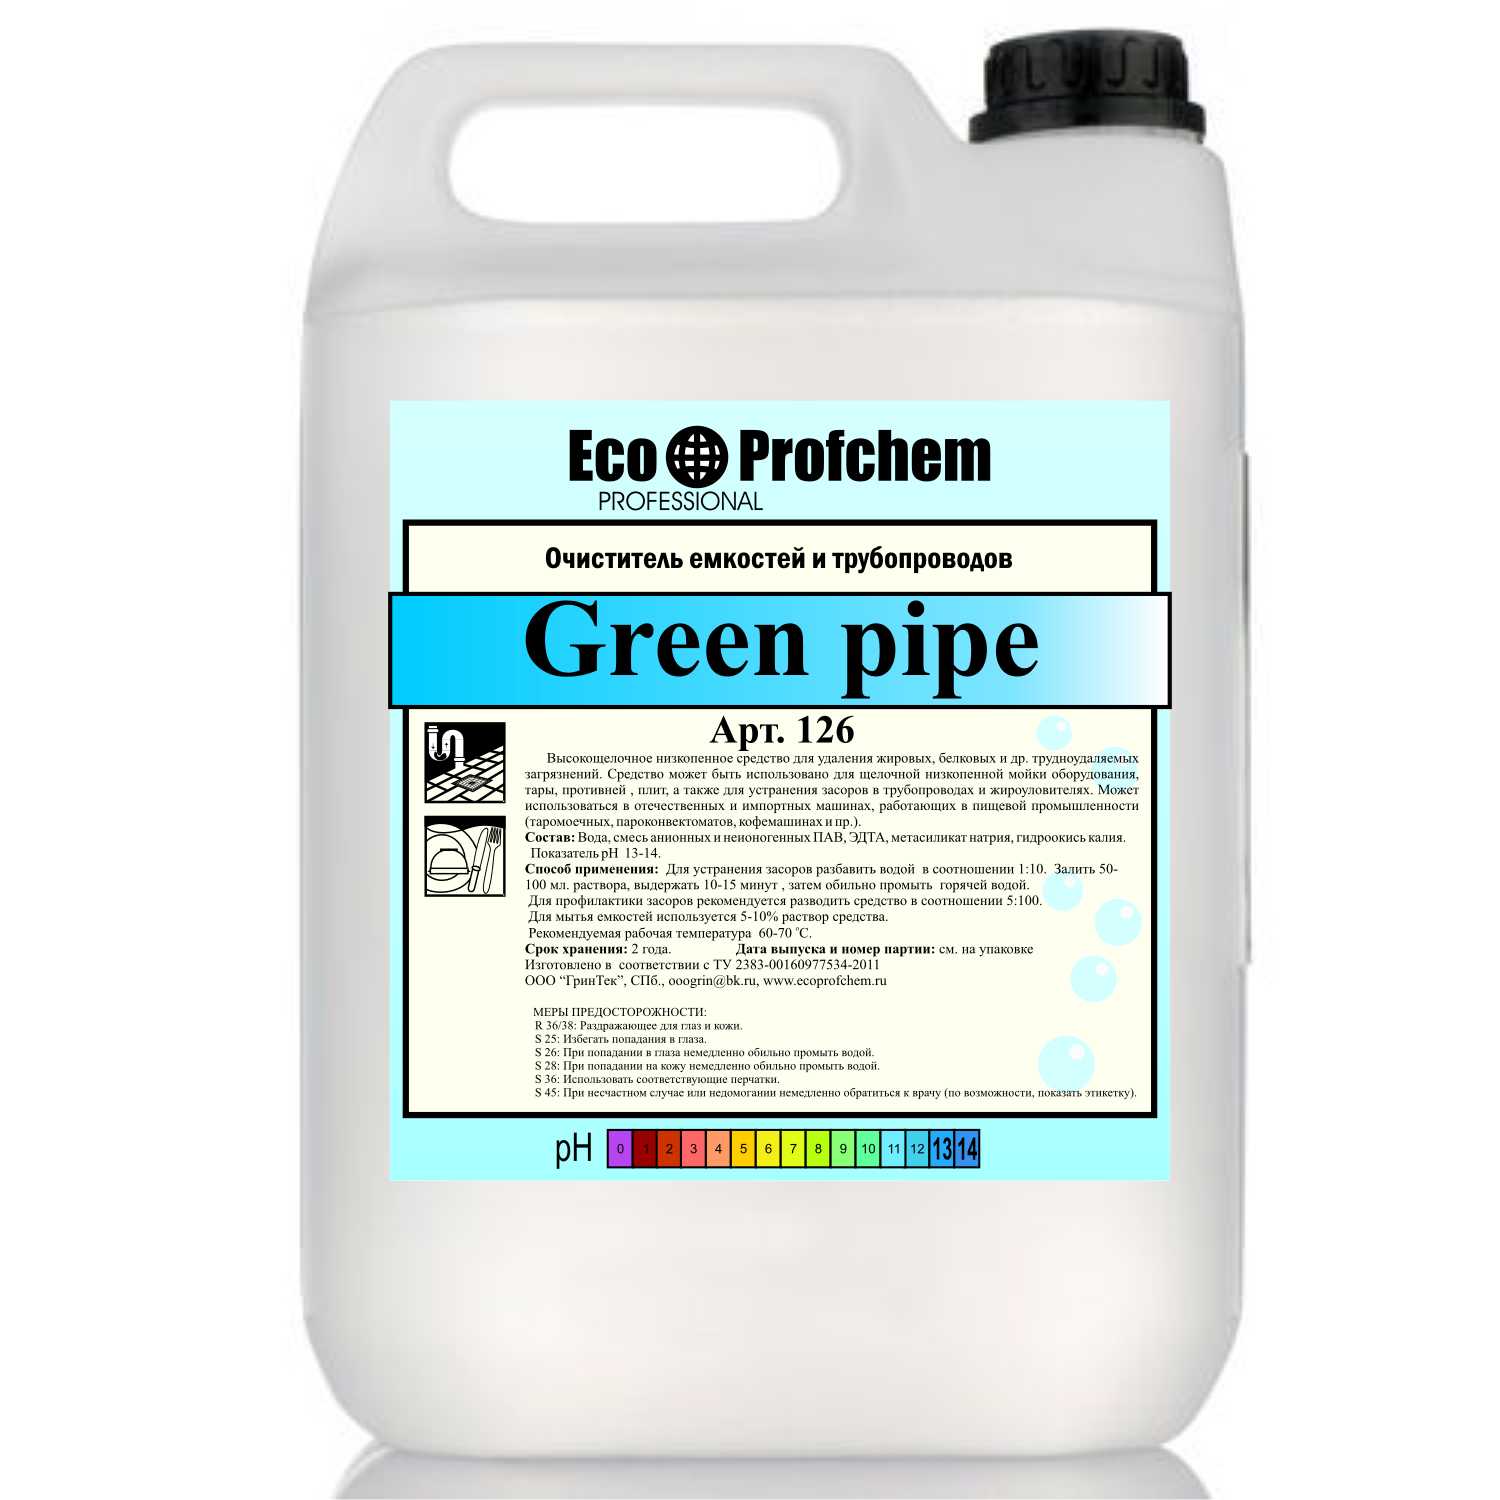 Green pipe - Очиститель емкостей и трубопроводов